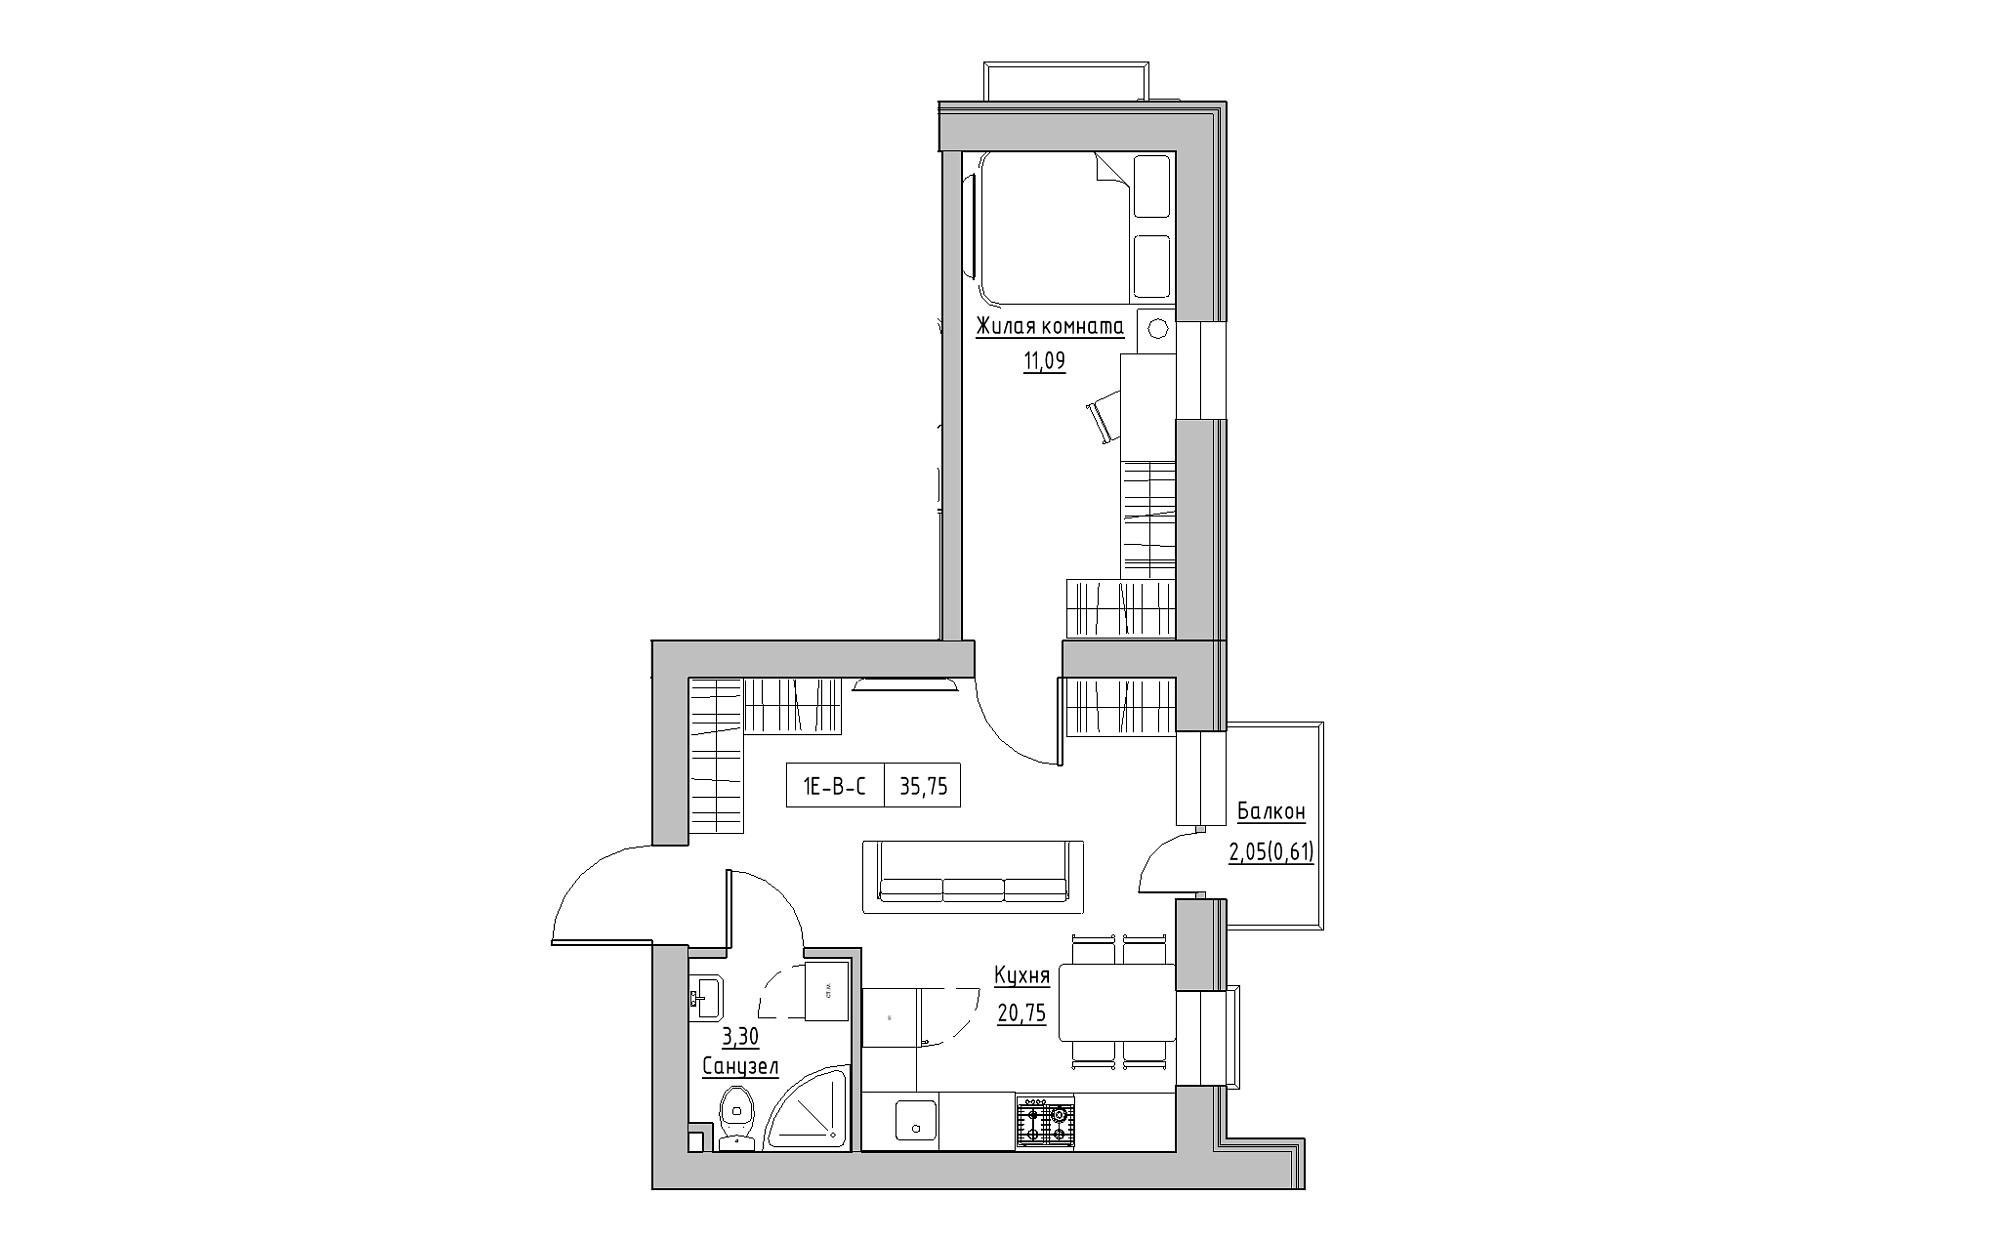 Планировка 1-к квартира площей 35.75м2, KS-022-04/0009.